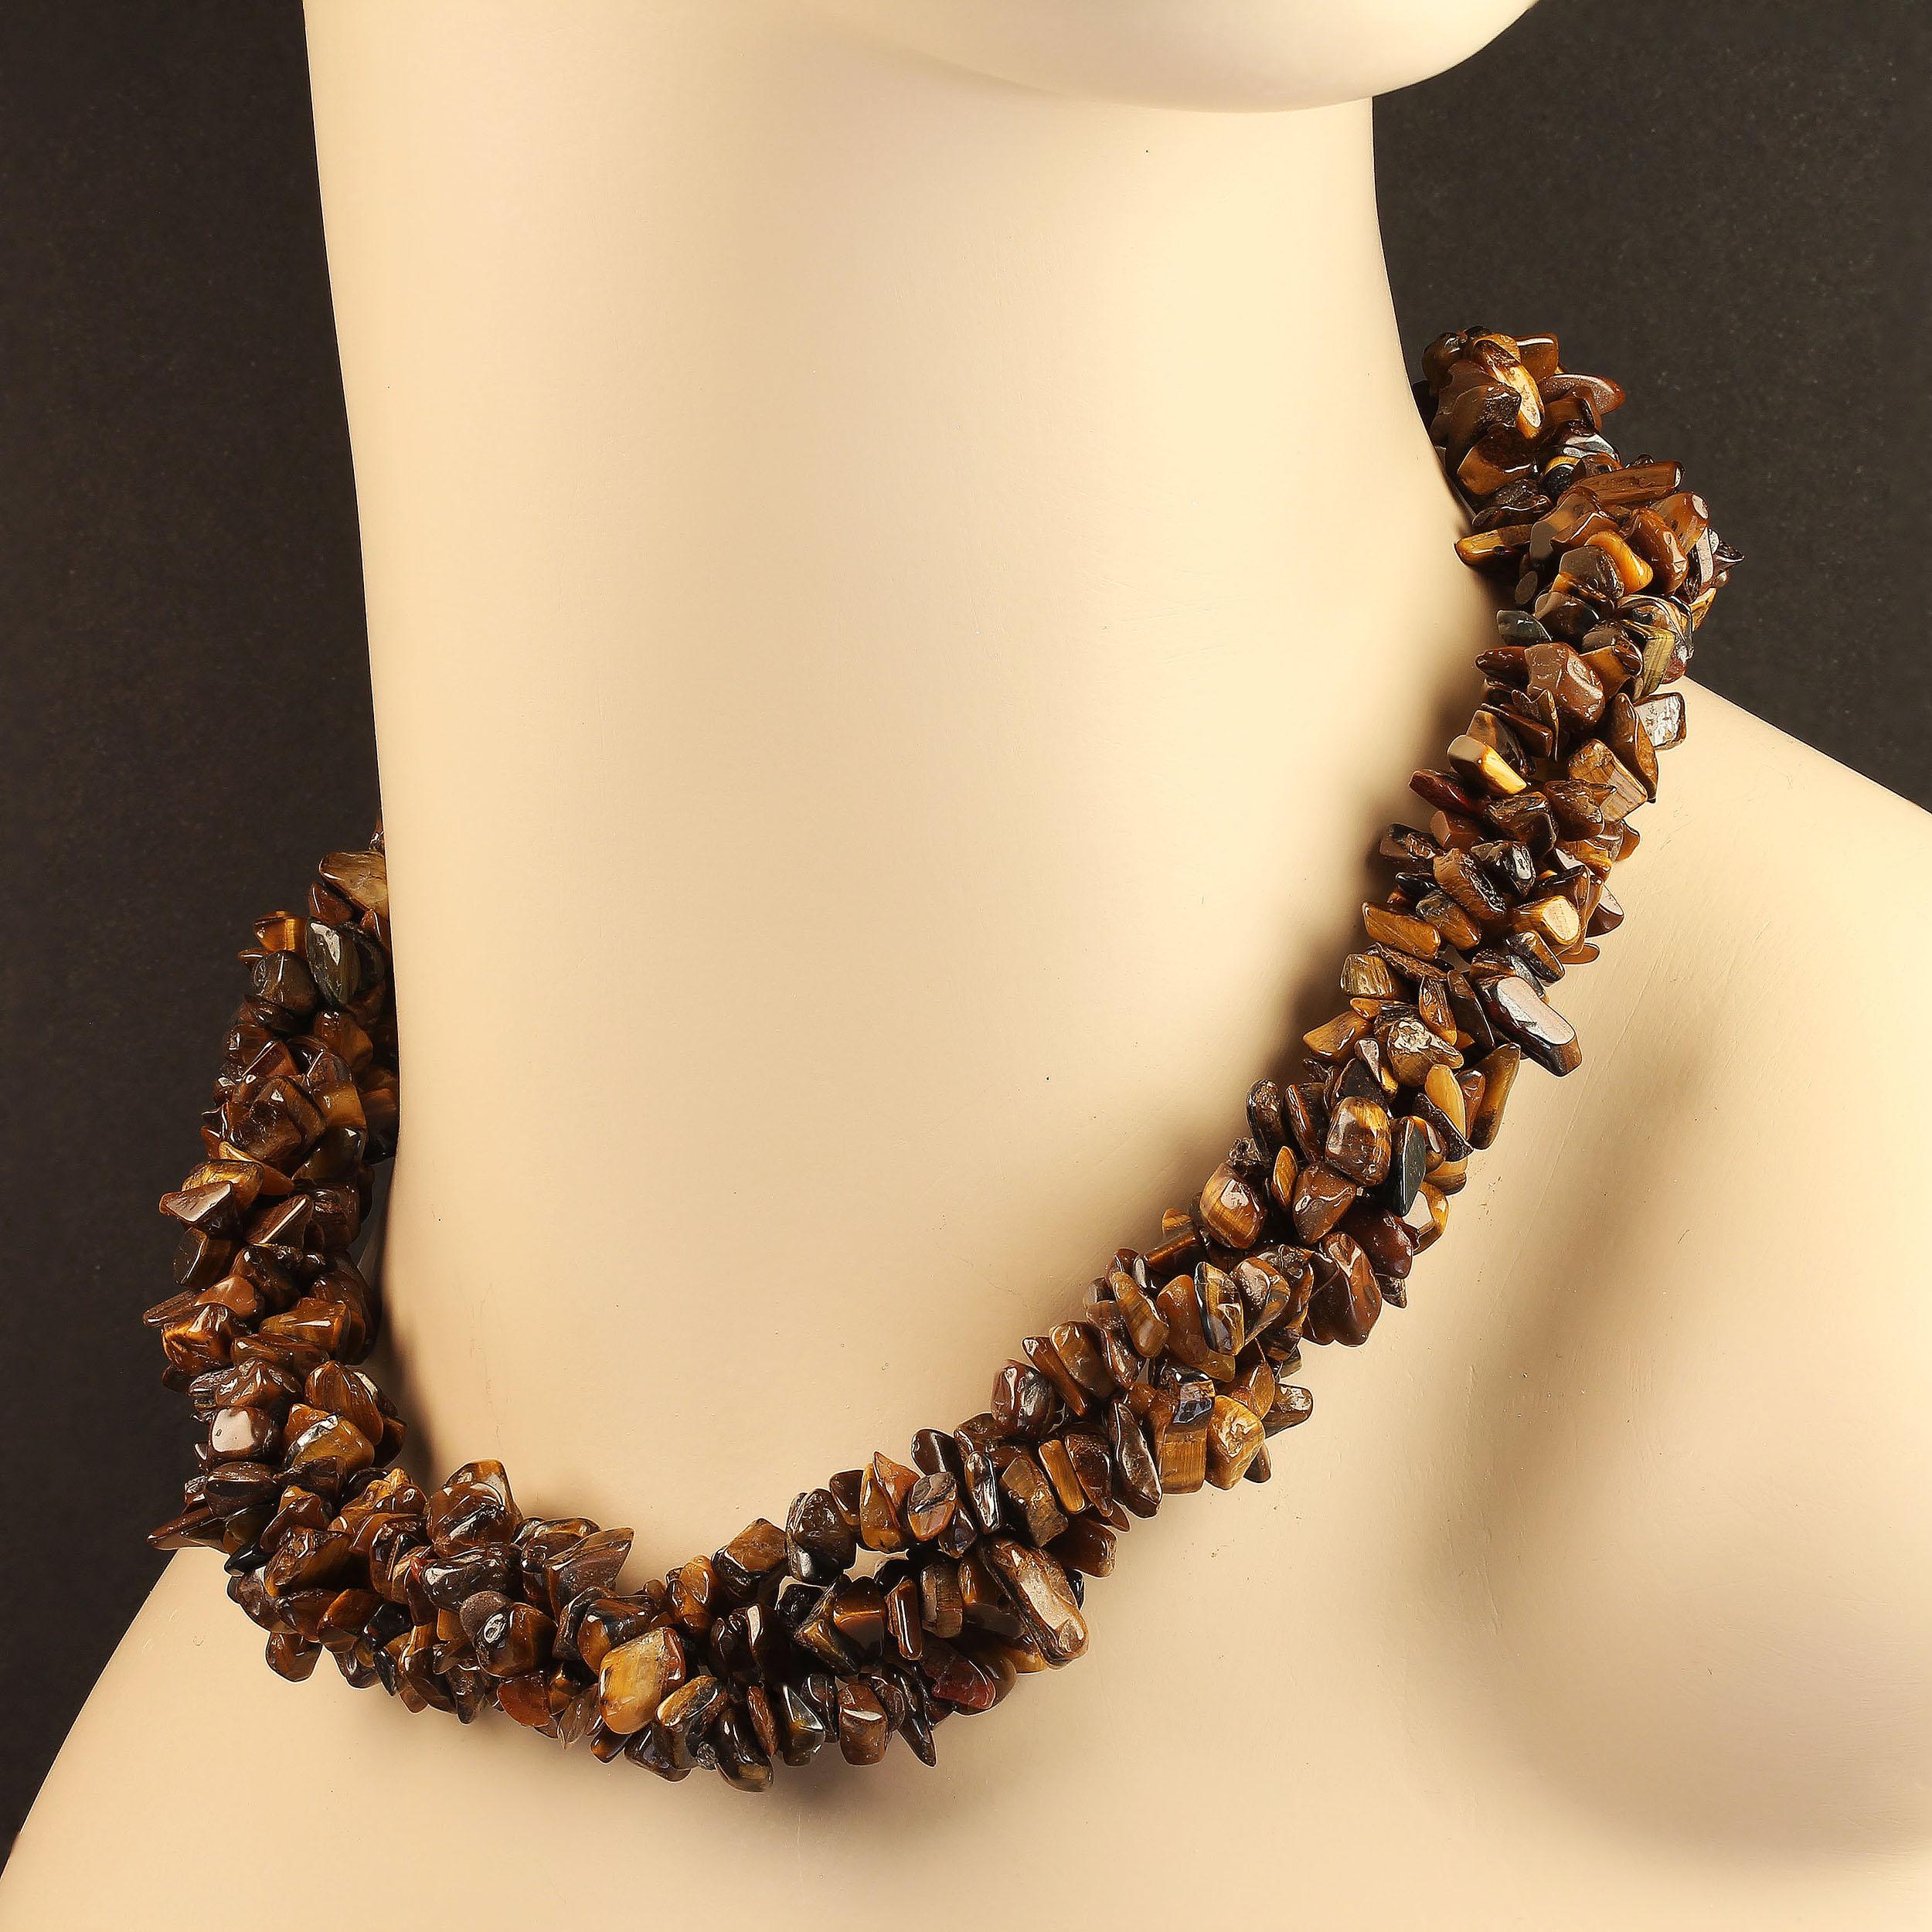 Zwei 36 Zoll lange, unendliche Halsketten aus Chatoyant Tiger's Eye.  Diese wunderbar vielseitigen Halsketten können lang getragen werden oder für einen kürzeren, eleganteren, maßgeschneiderten Look gedreht werden.  Das Tigerauge ist eine Form des